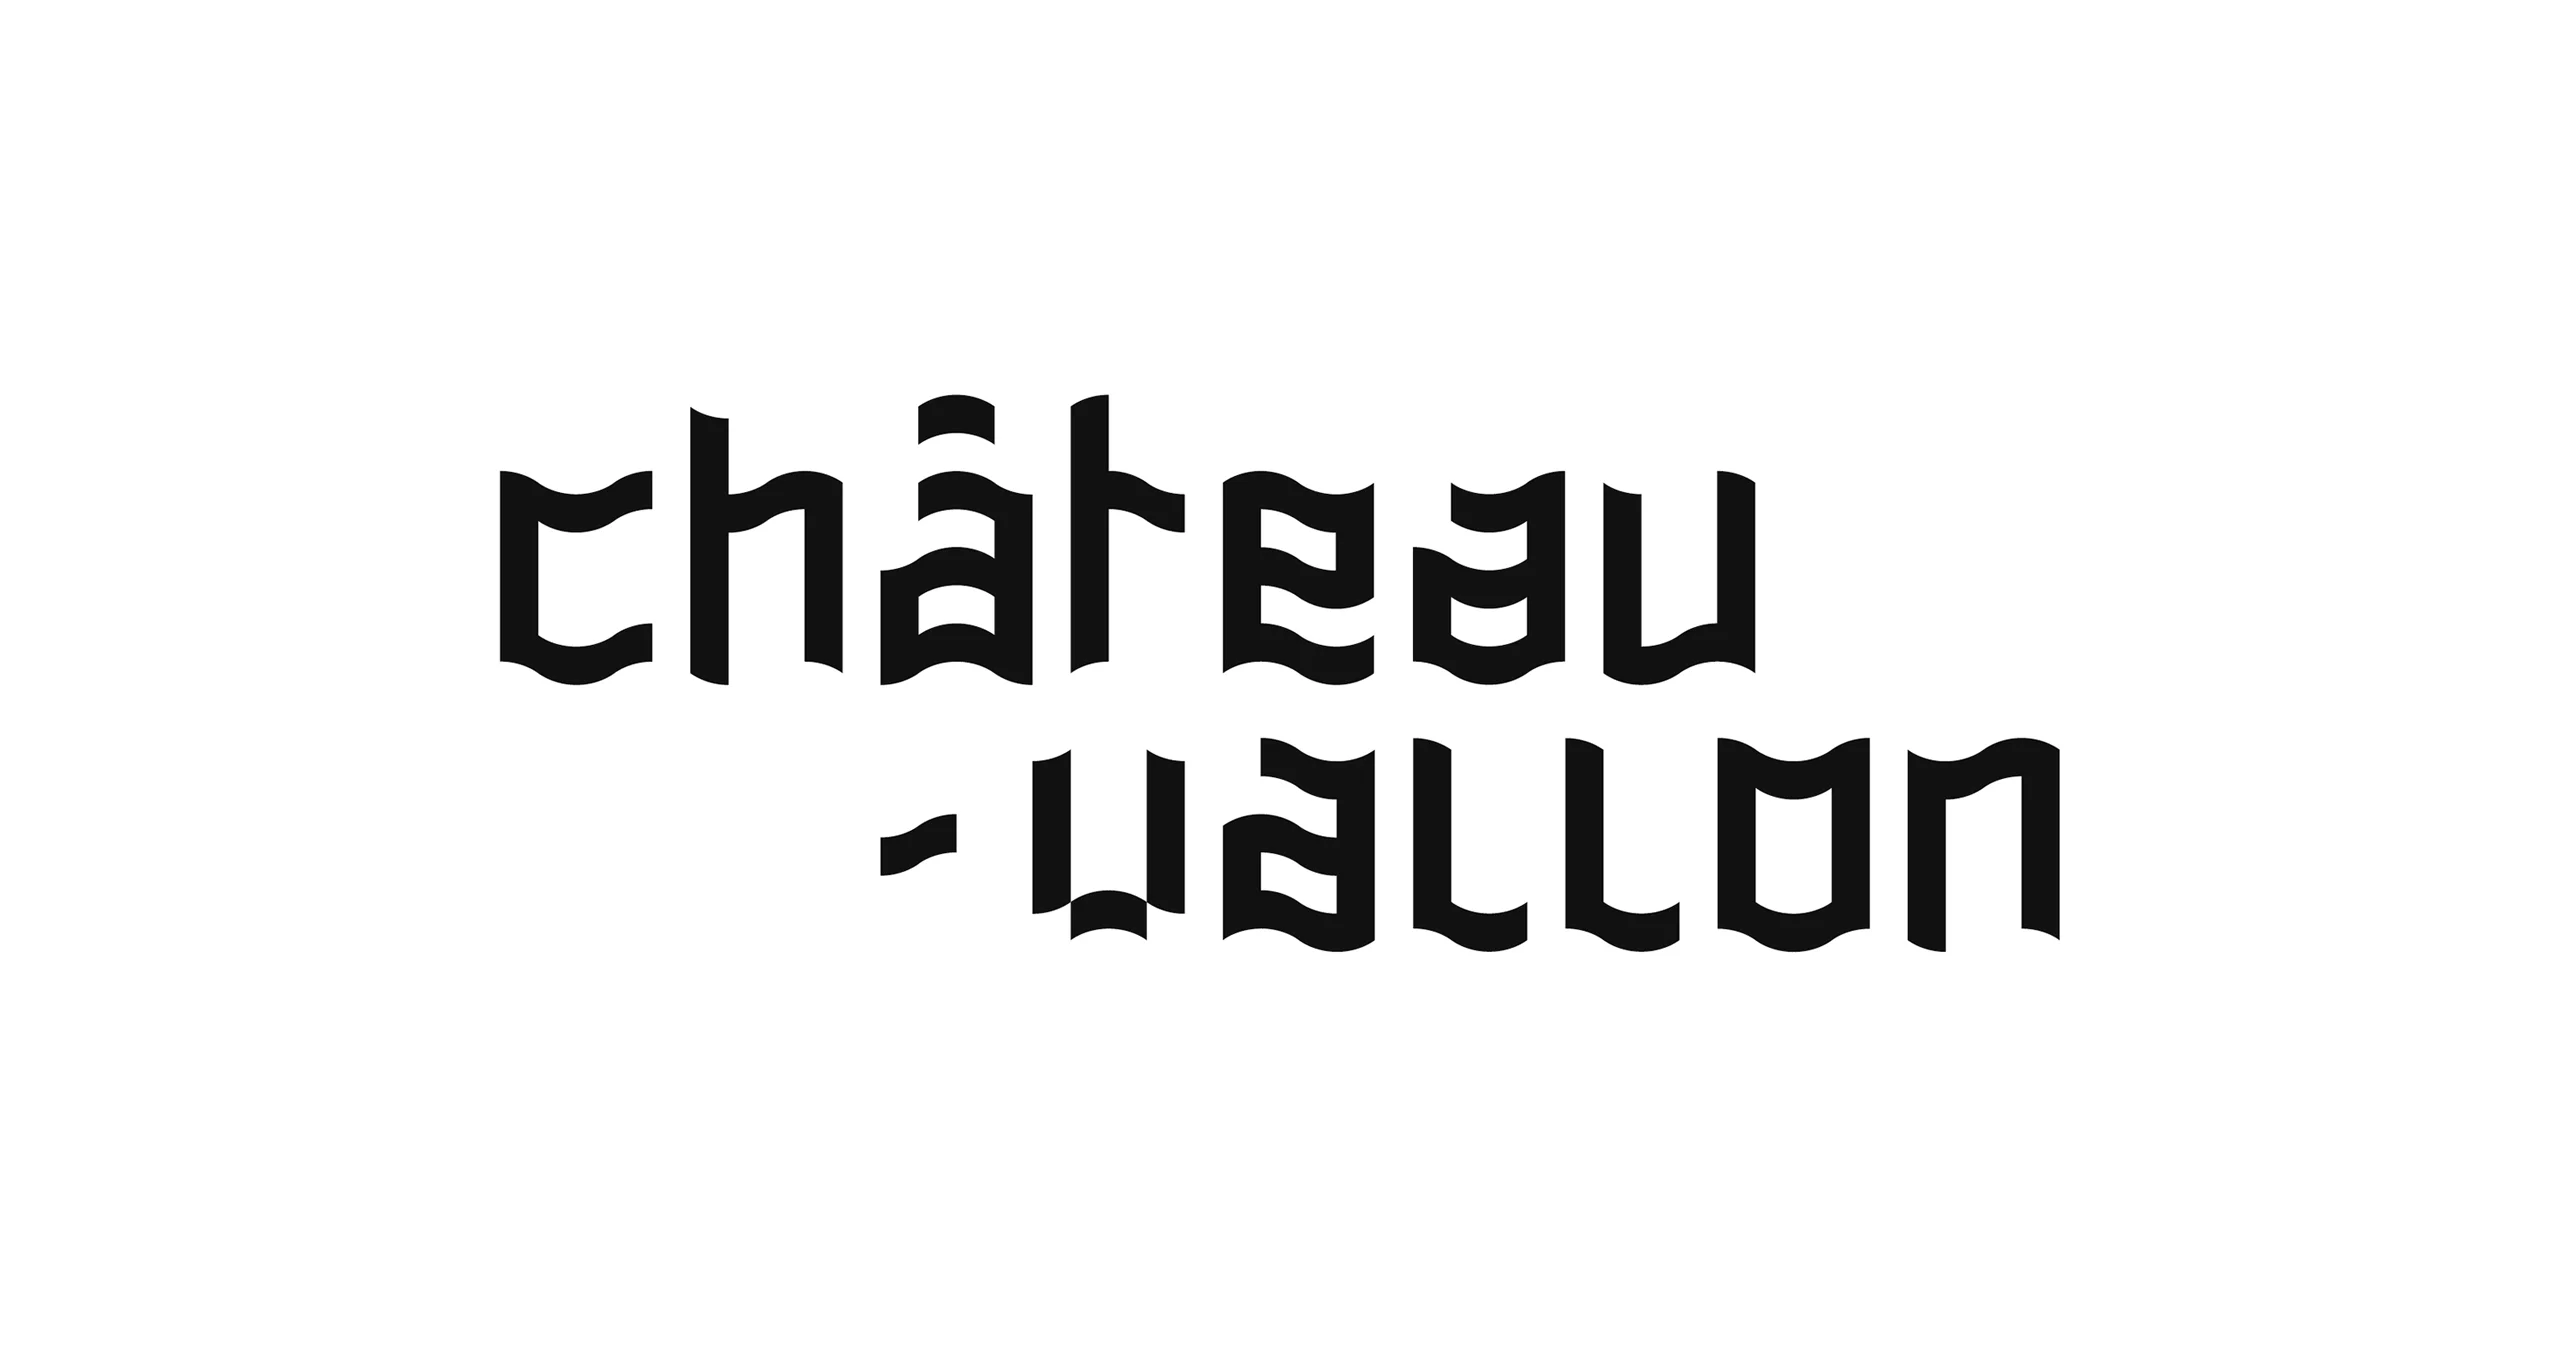 Logotype de la Scène Nationale Châteauvallon-Liberté, formé par le mélange de la typo qui ondule du logo Chateauvallon et de la typo pixelisées du logo Le Liberté